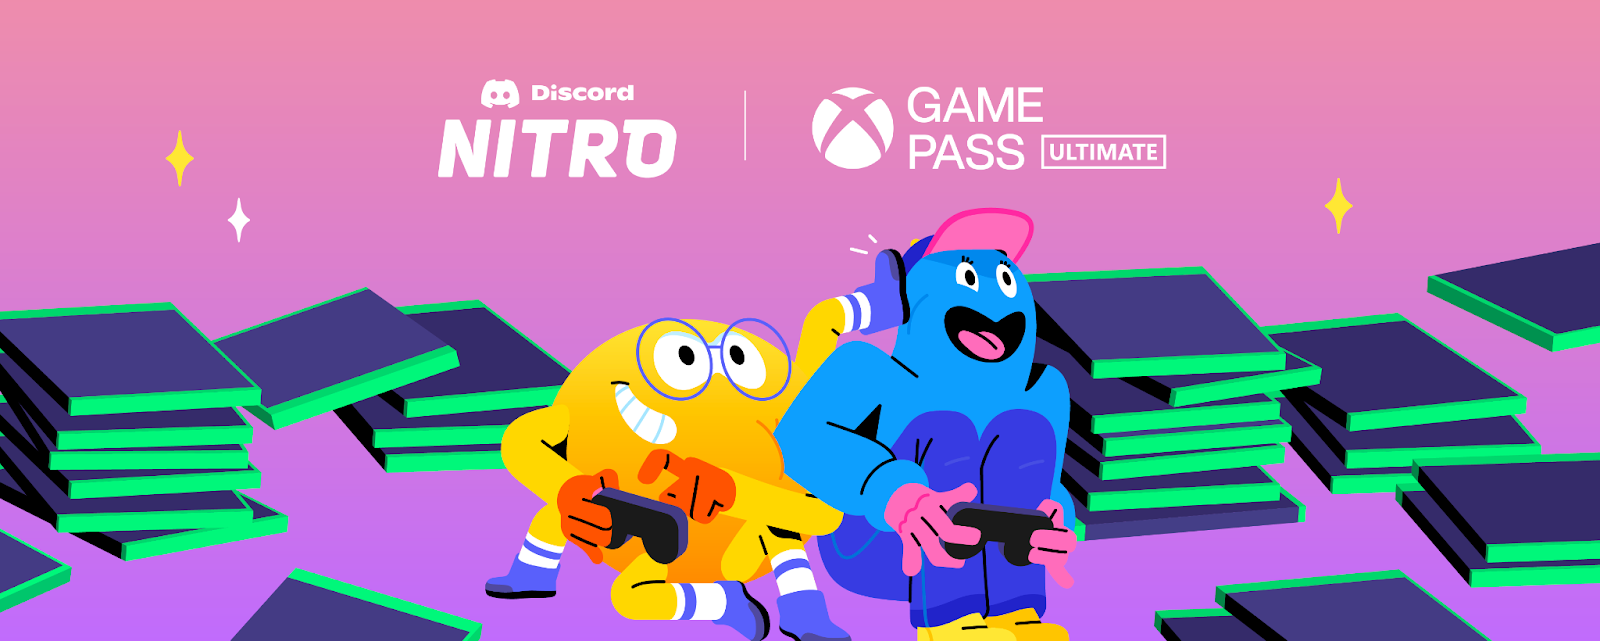 2 mois de Xbox Game Pass Ultimate avec Discord Nitro FAQ – Discord